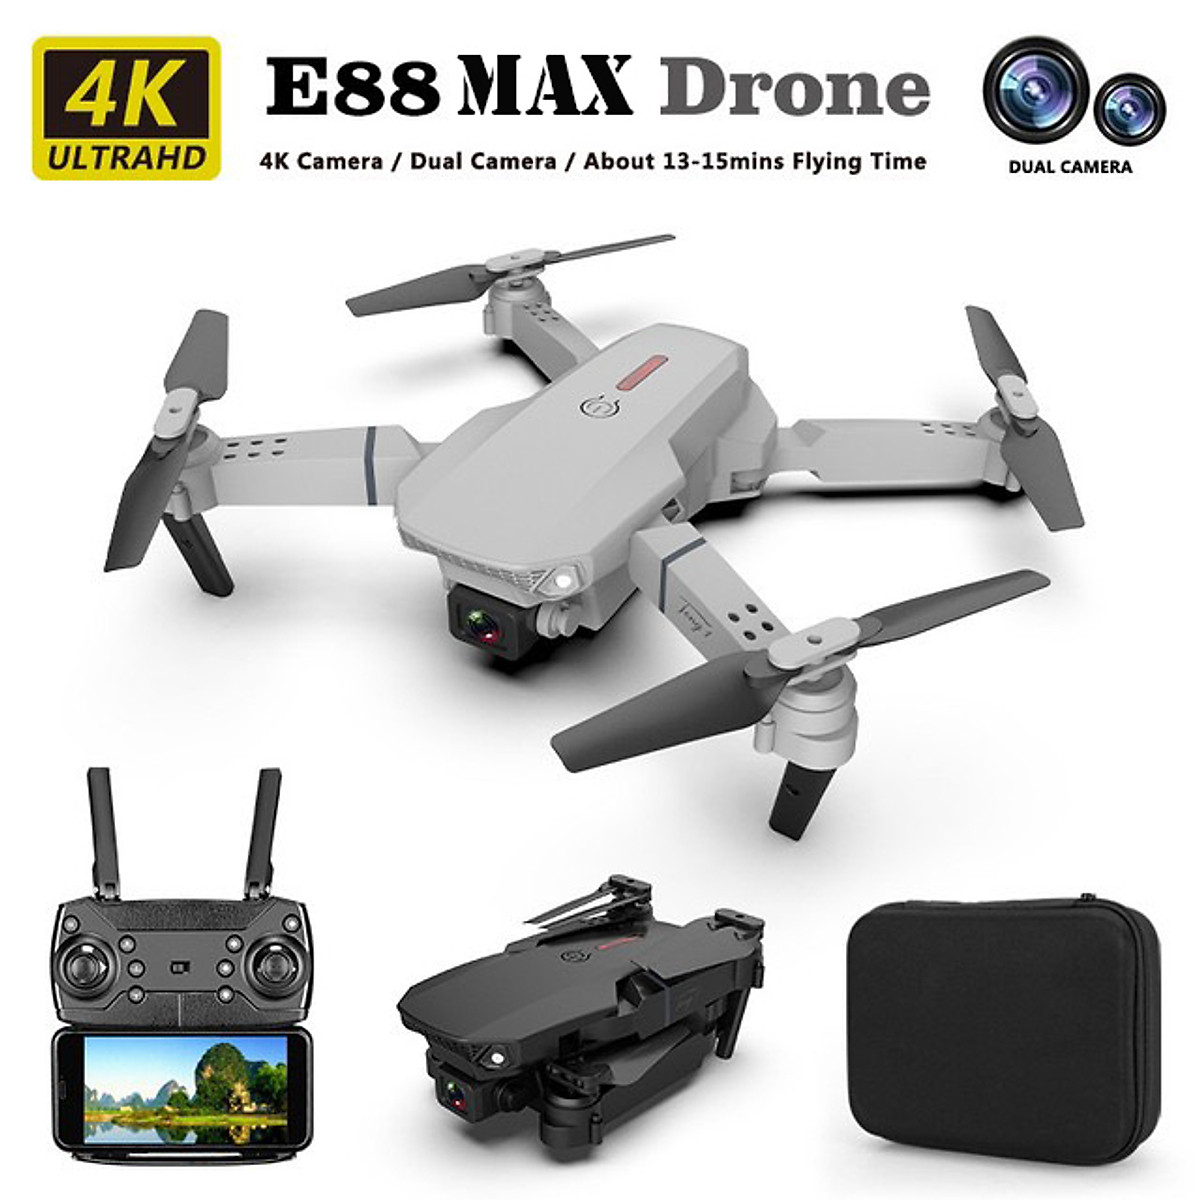 Drone camera e58 - 2 camera, Flycam mini giá rẻ